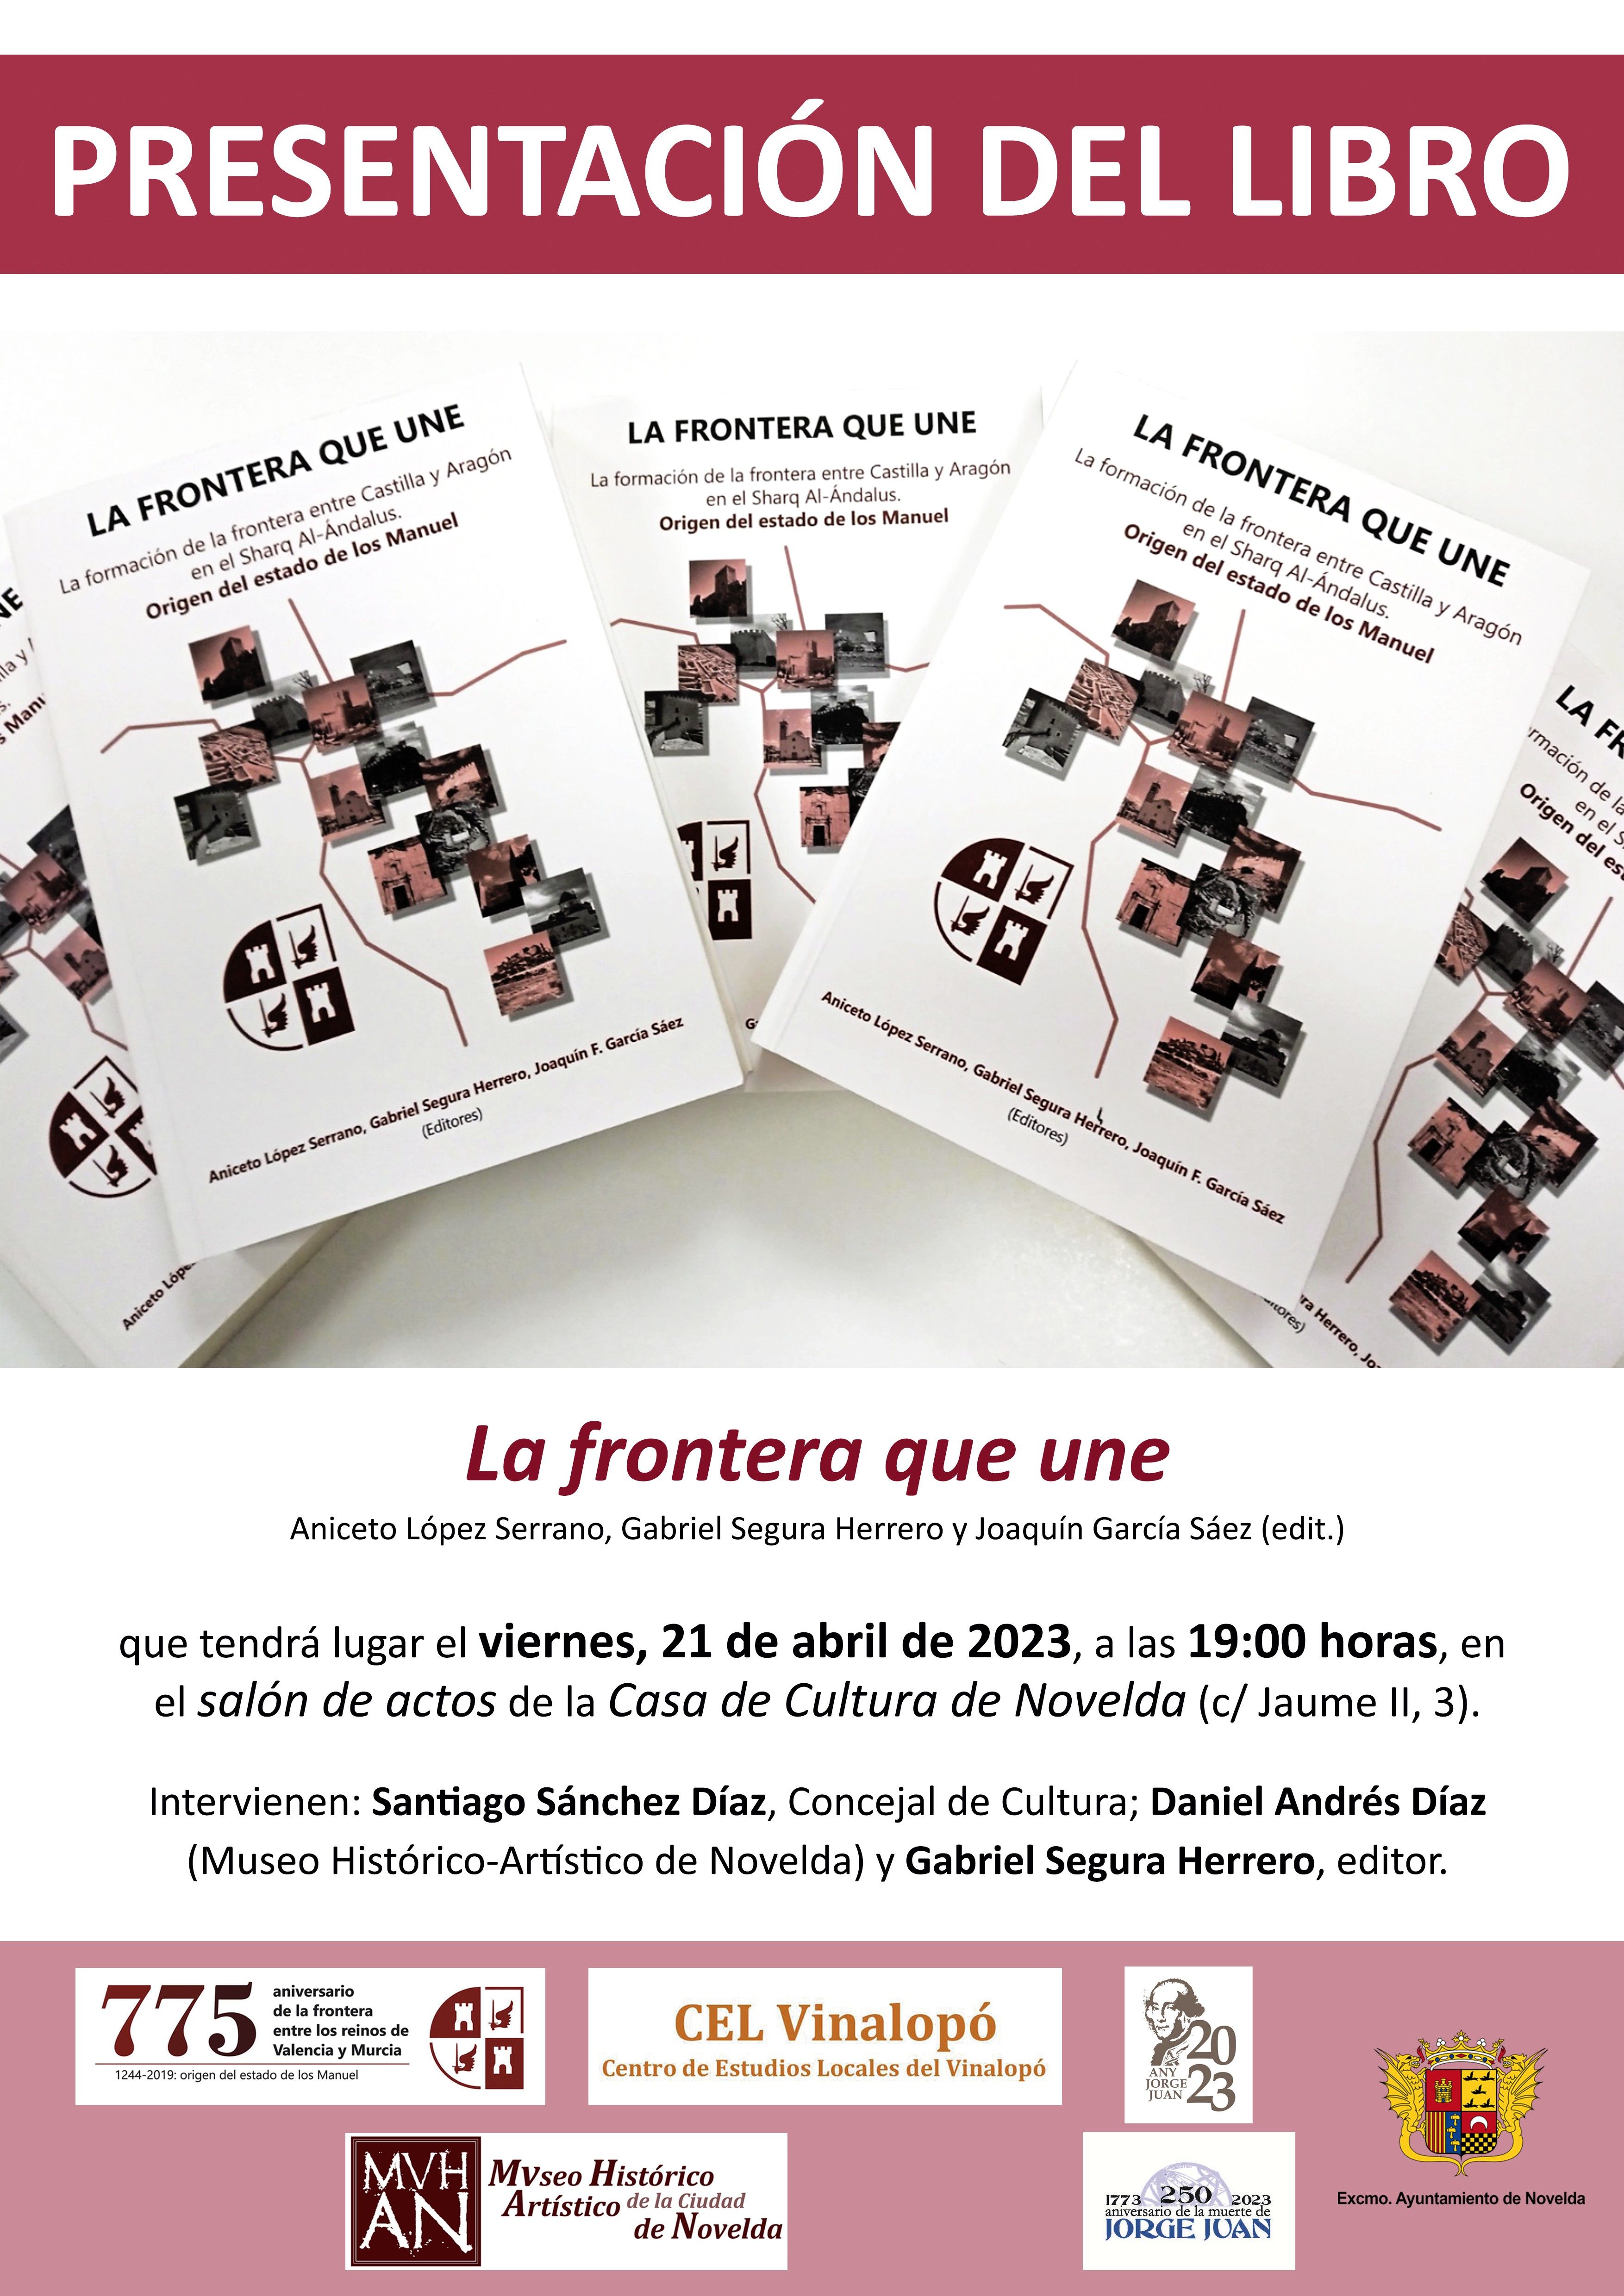 Ayuntamiento de Novelda Cartel-Presentac-Libro-775-Aniv-NOVELDA Presentación del libro "La frontera que une" 